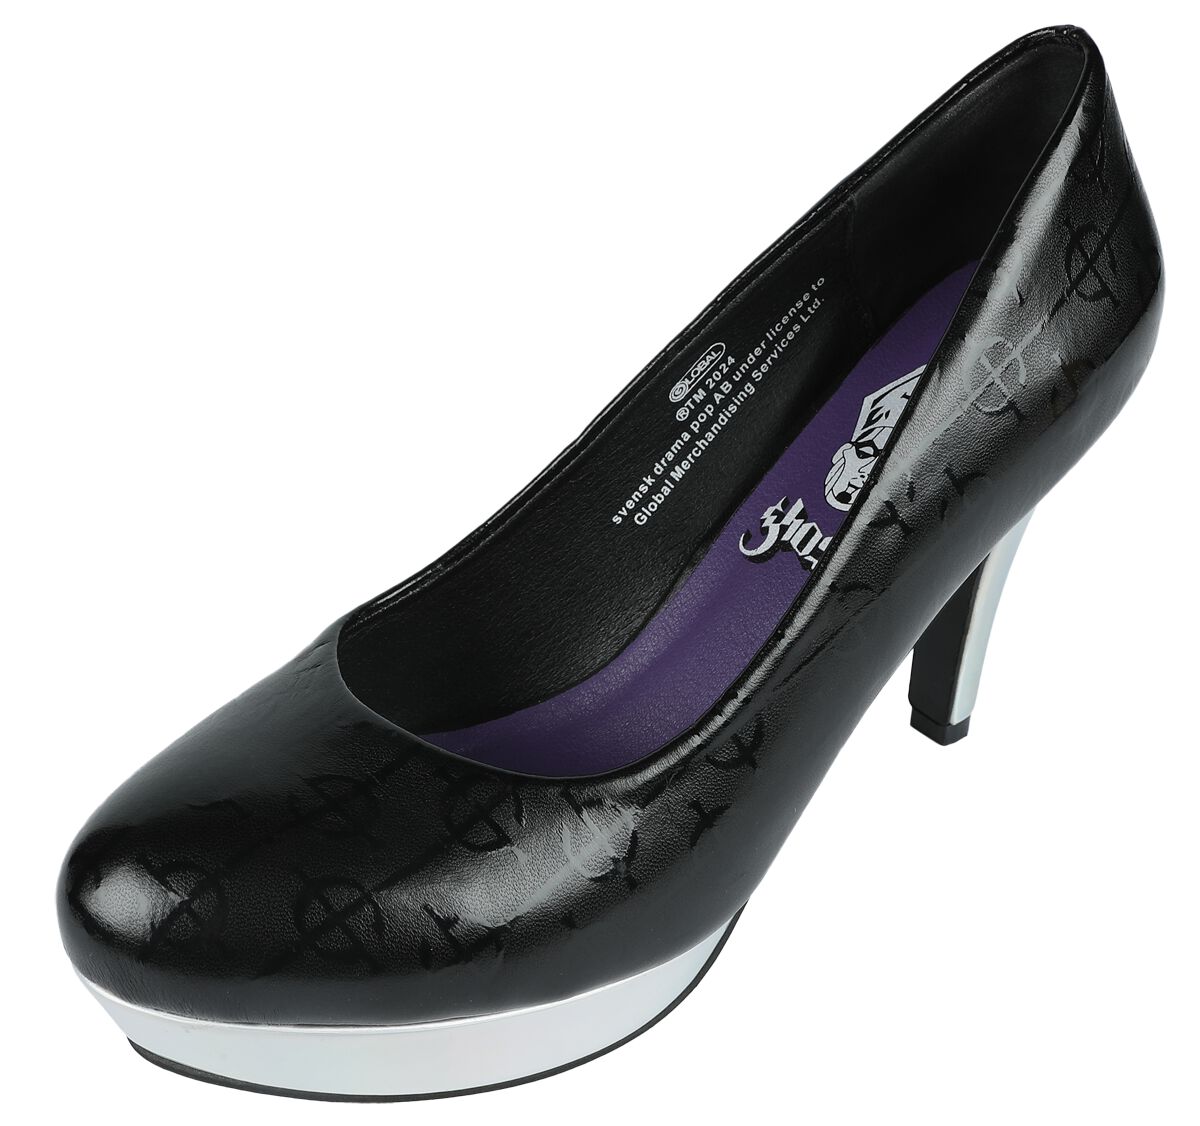 Ghost EMP Signature Collection High Heel schwarz silberfarben in EU39